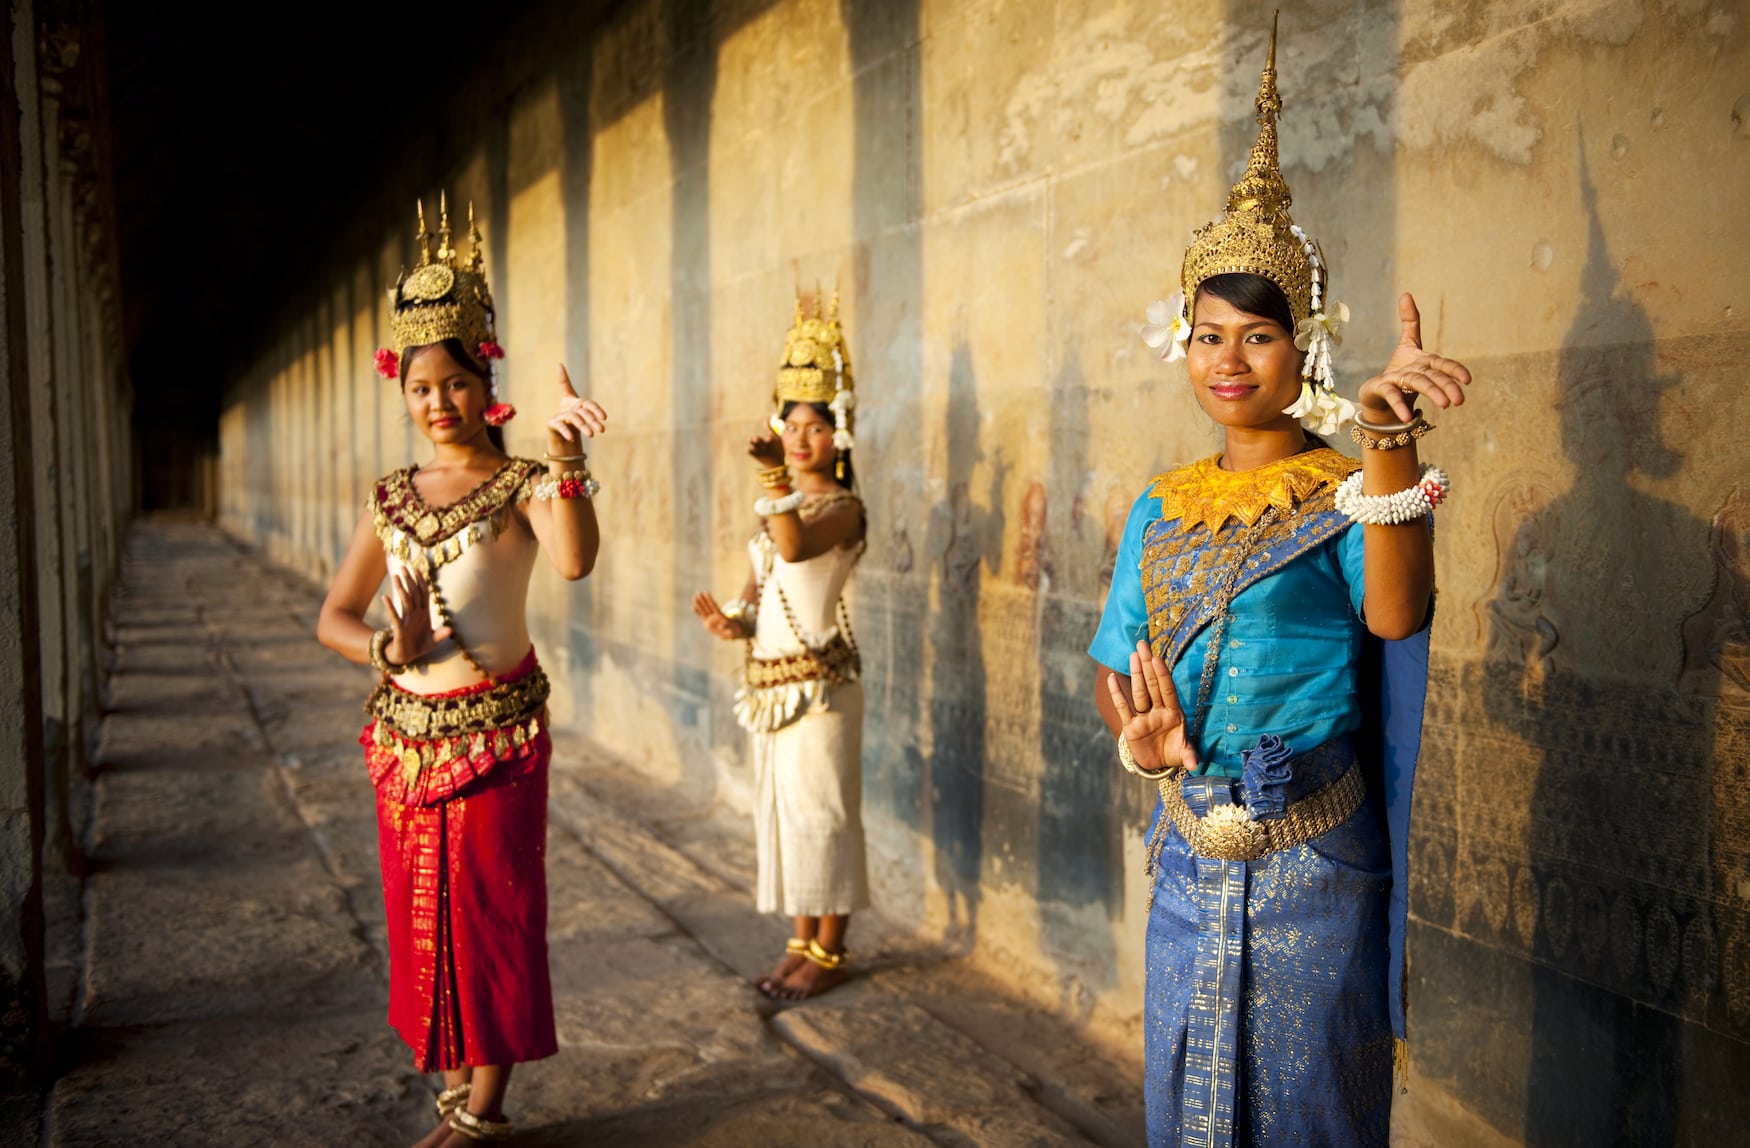 Drei Frauen aus Kambodscha tanzen den Khmer, einen traditionellen Tanz, der auf der Liste des immateriellen Kulturerbes der Unesco steht